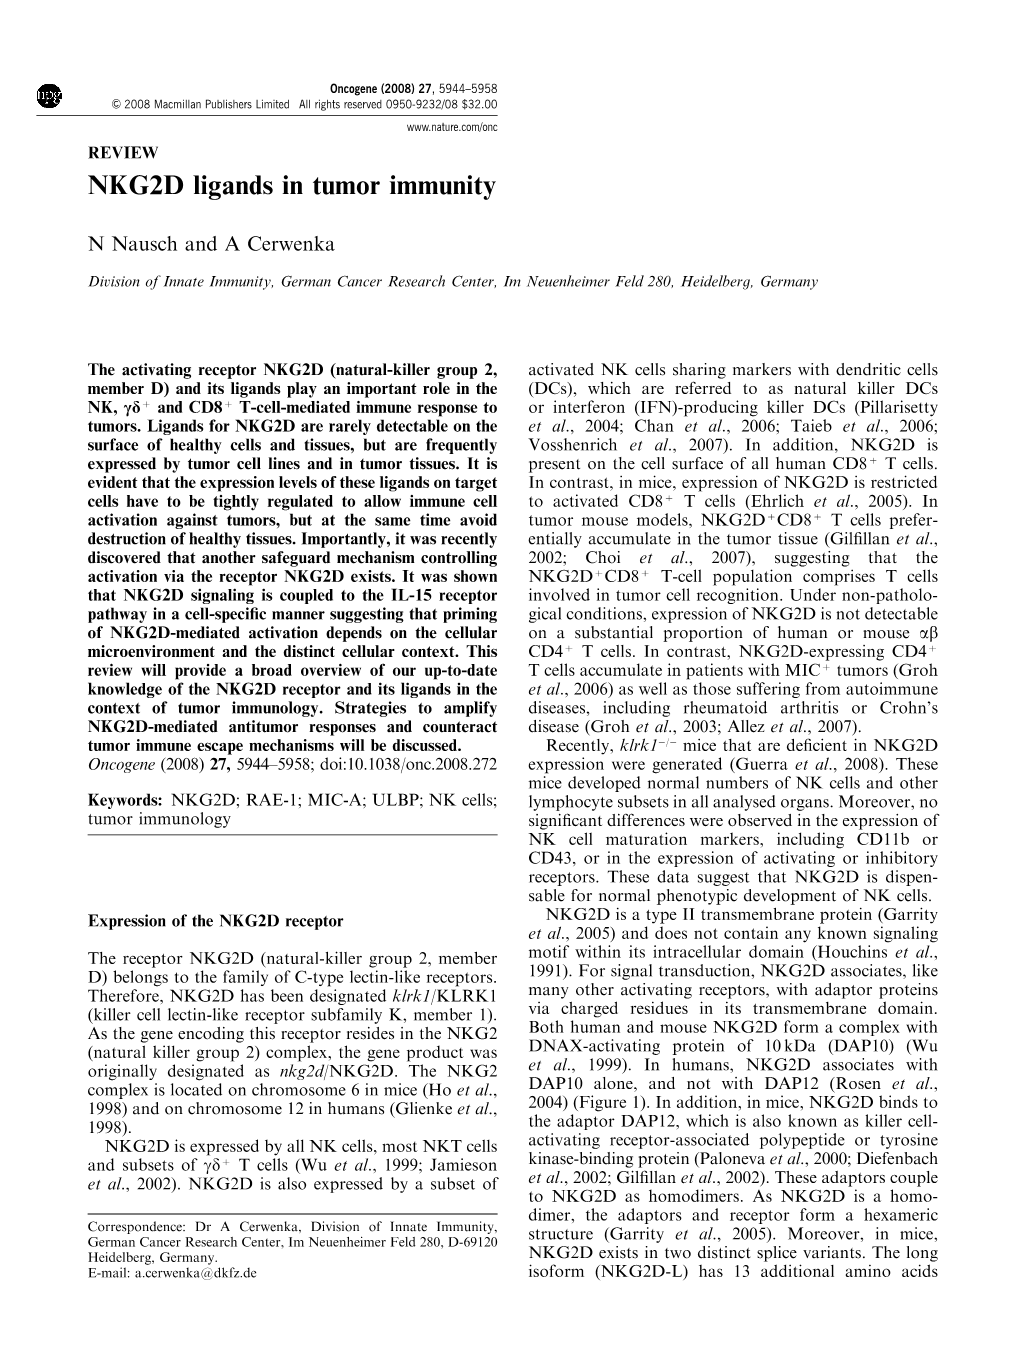 NKG2D Ligands in Tumor Immunity